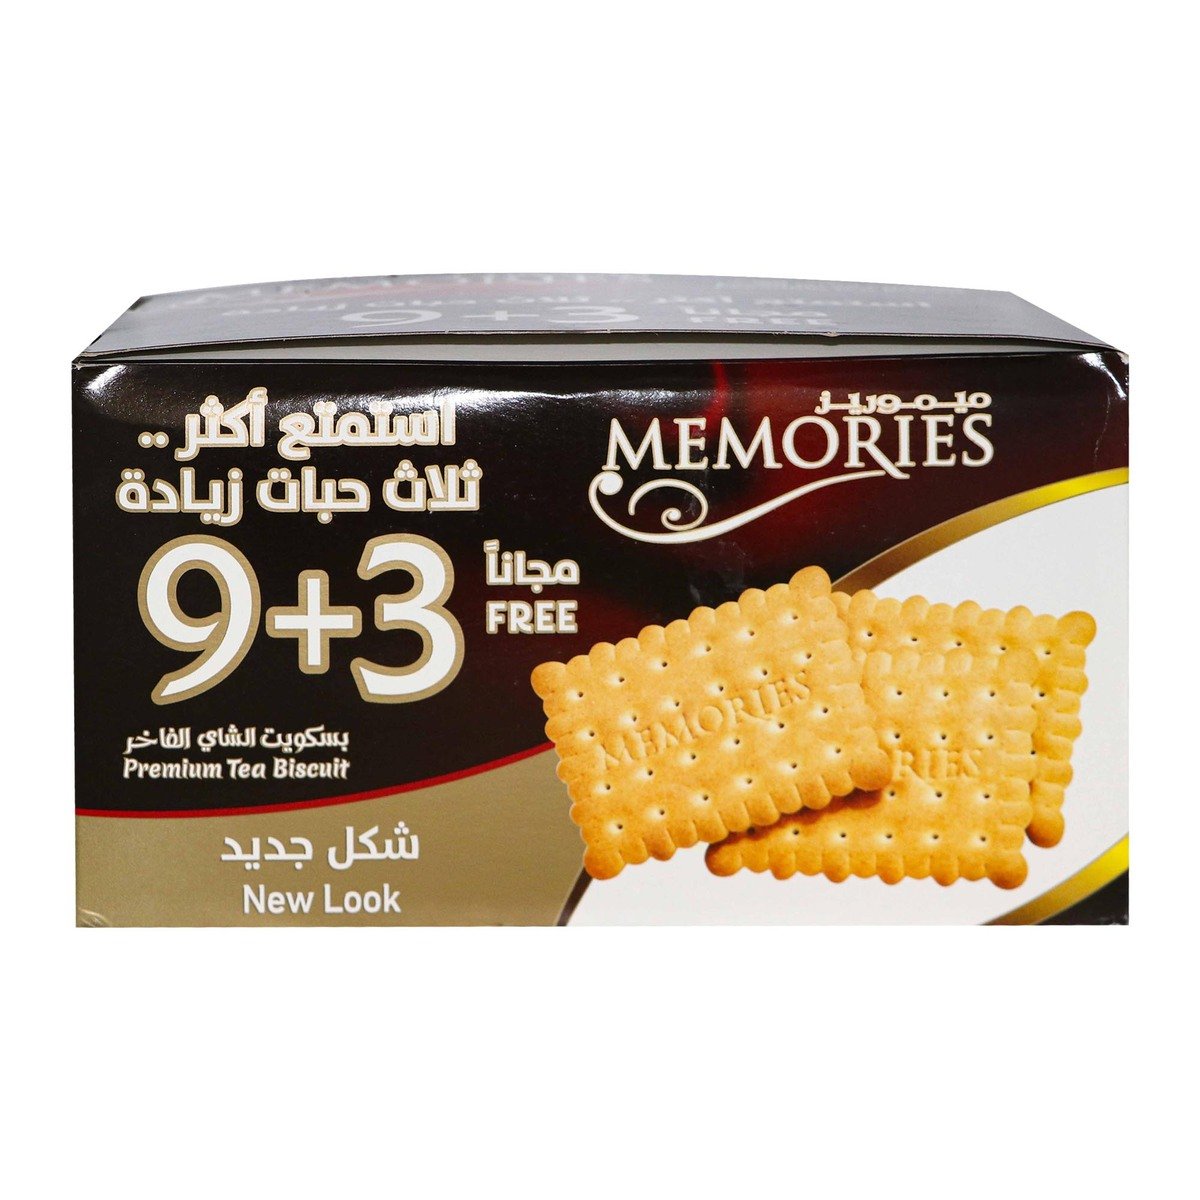 Memories Tea Biscuits 80g 9+3